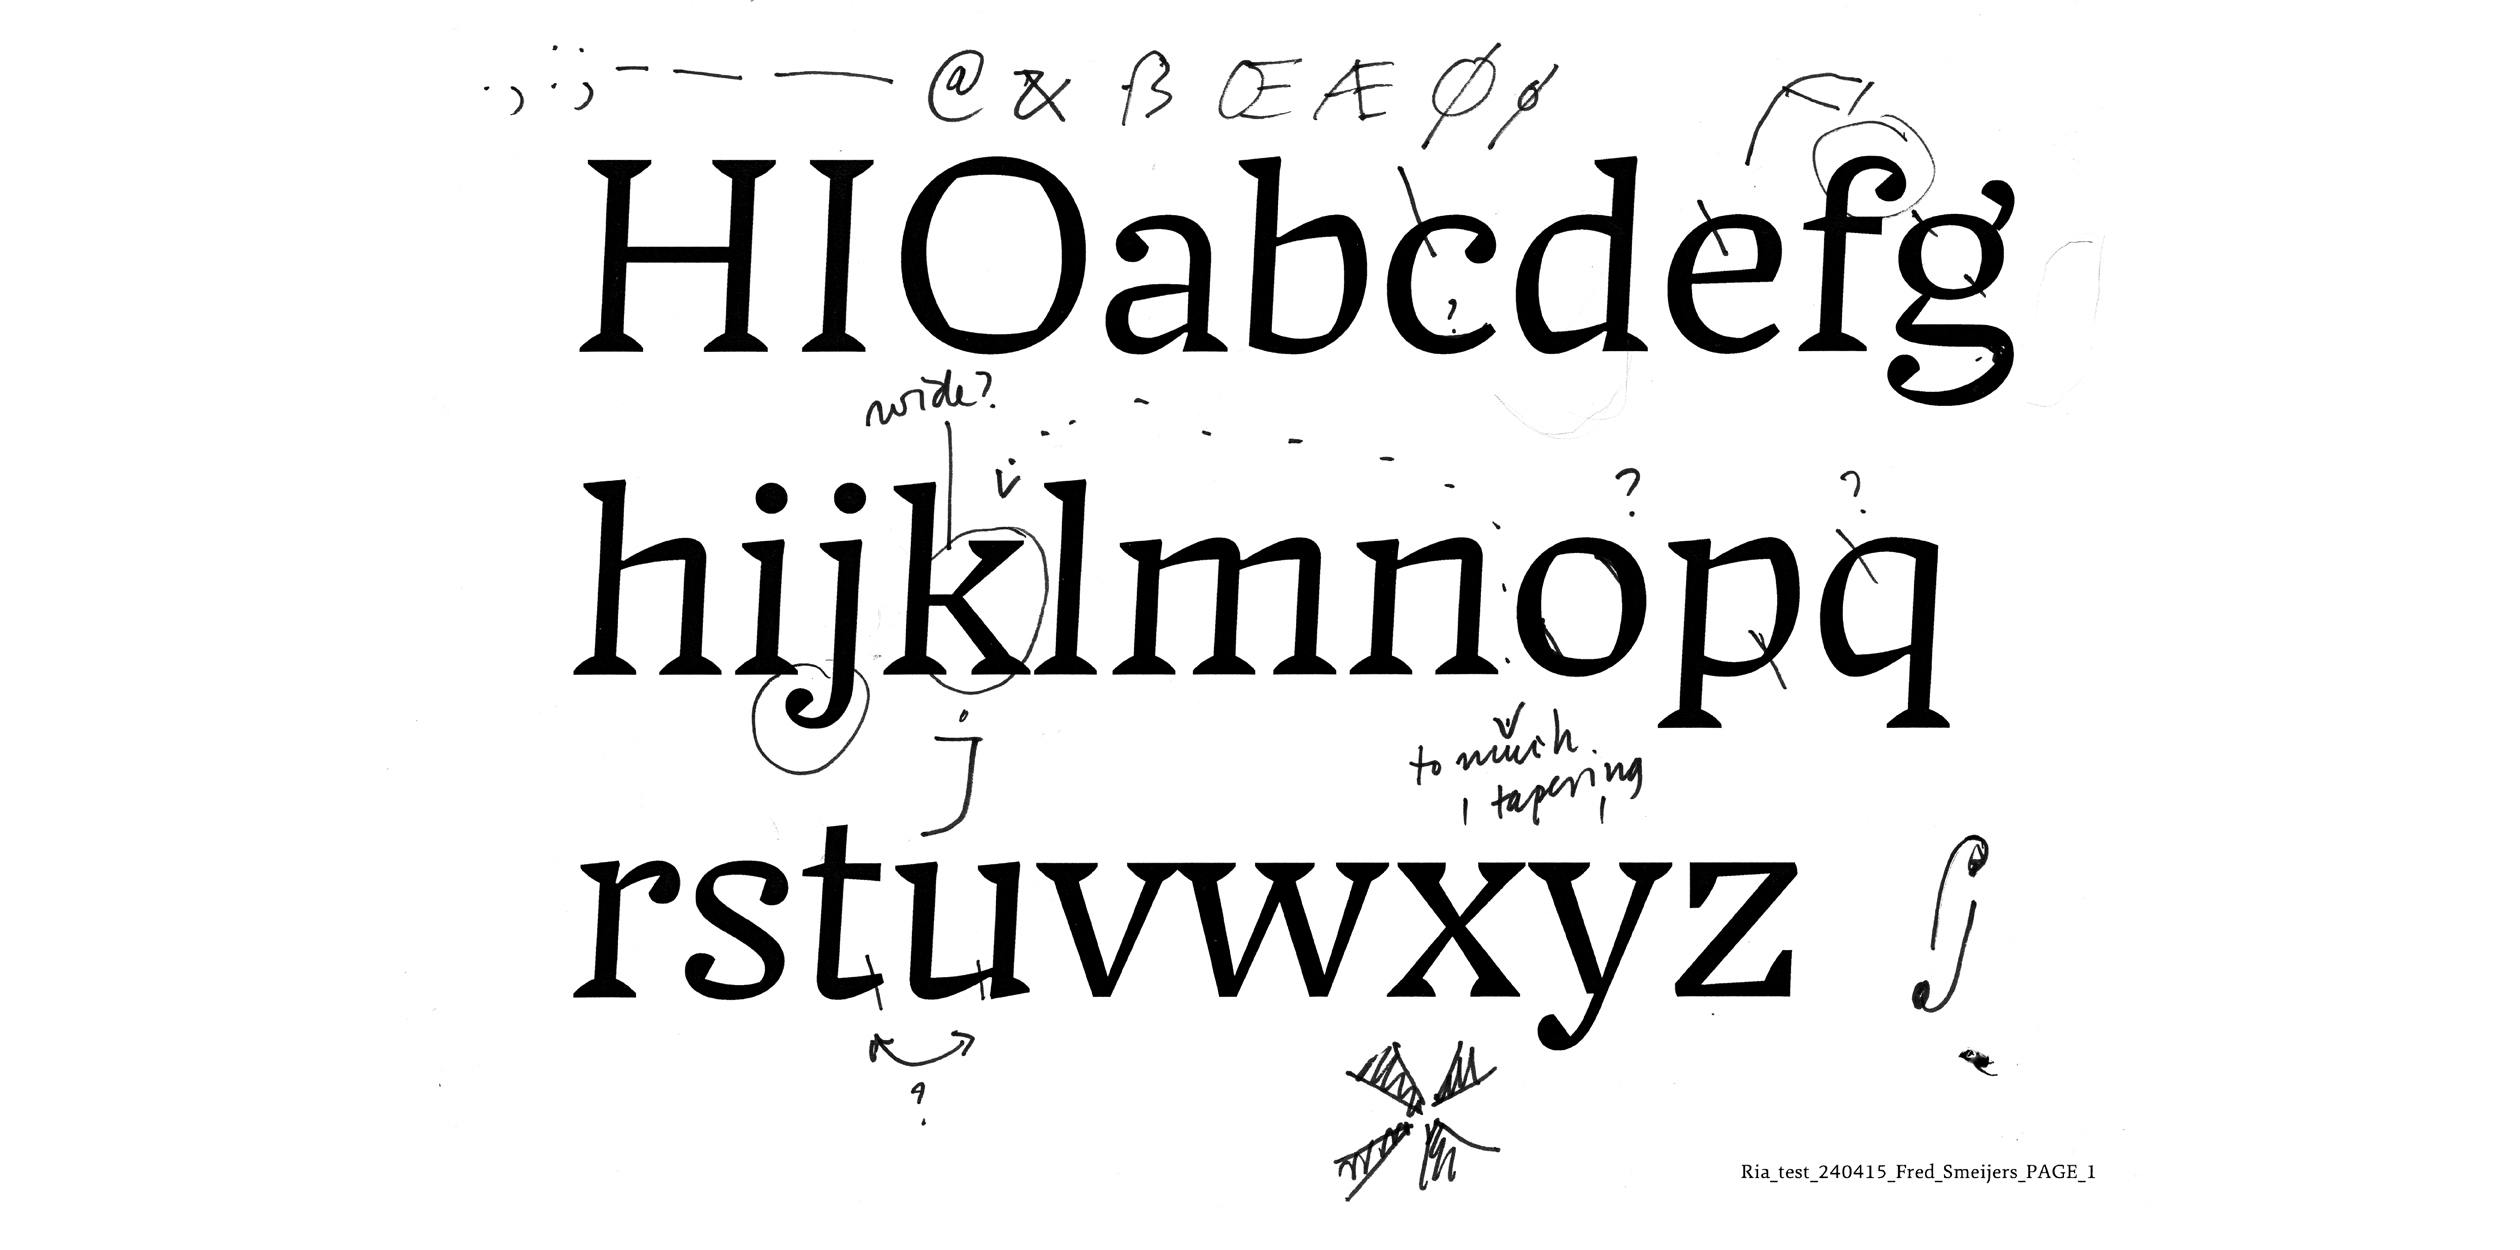 Image of Samsa typeface project from Katerina Kochkina